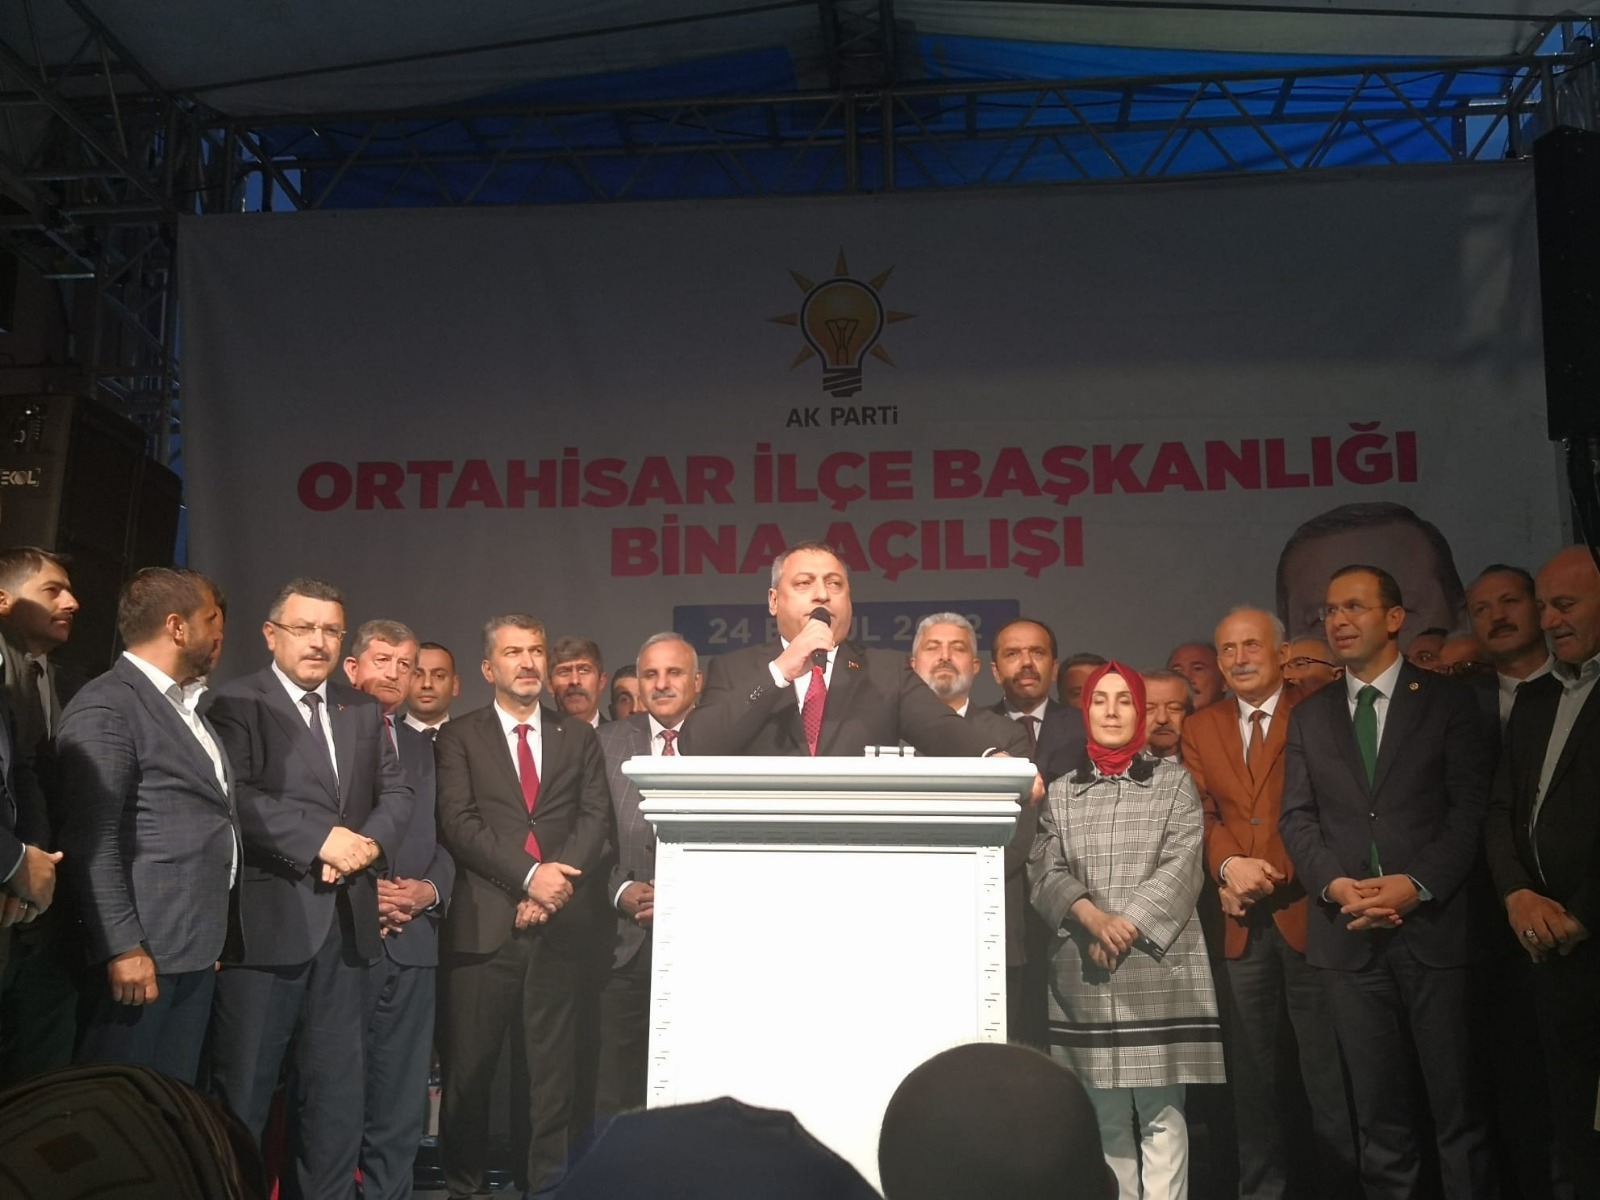 İçişleri Bakanı Süleyman Soylu Trabzon'da konuşuyor - Canlı yayın